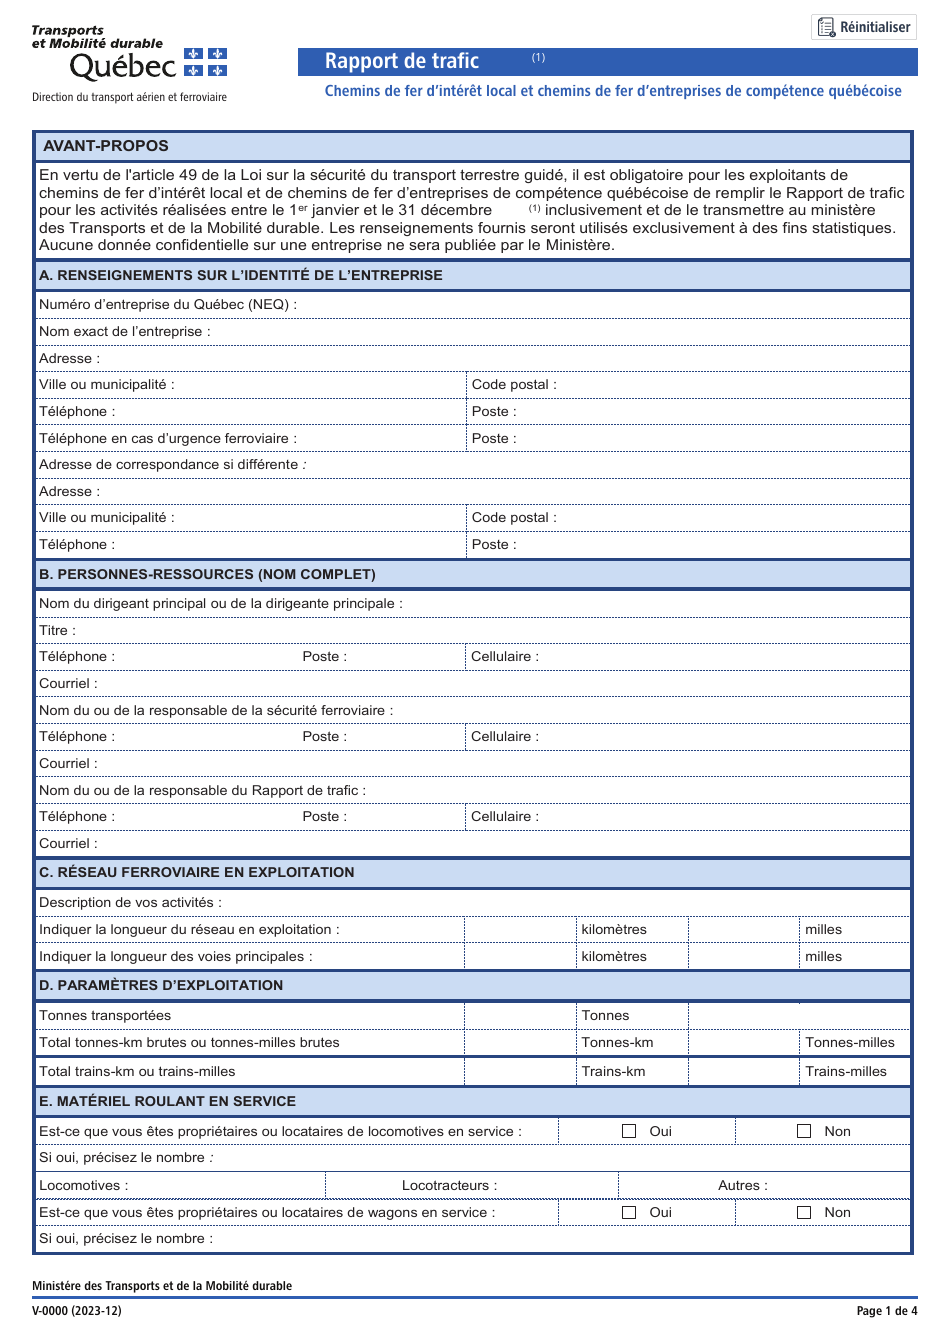 Forme V-0000 Rapport De Trafic - Chemins De Fer Dinteret Local Et Chemins De Fer Dentreprises De Competence Quebecoise - Quebec, Canada (French), Page 1